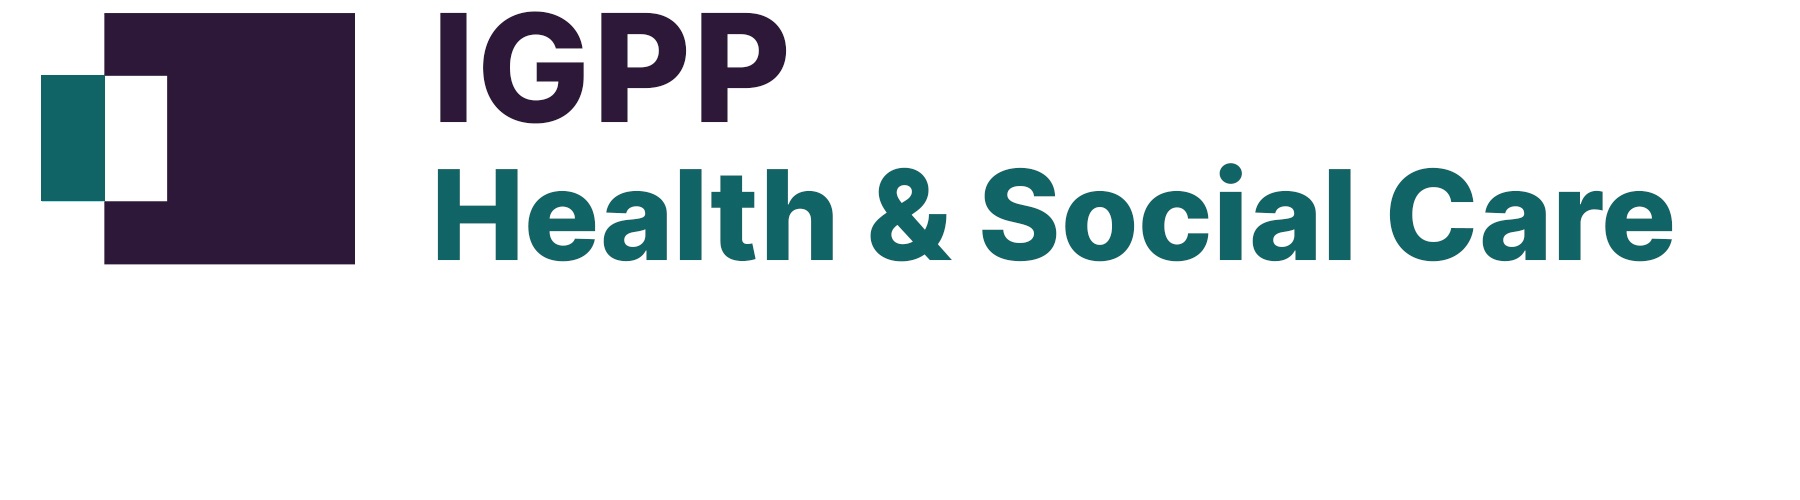 IGPP Health and Social Care sub brand logo